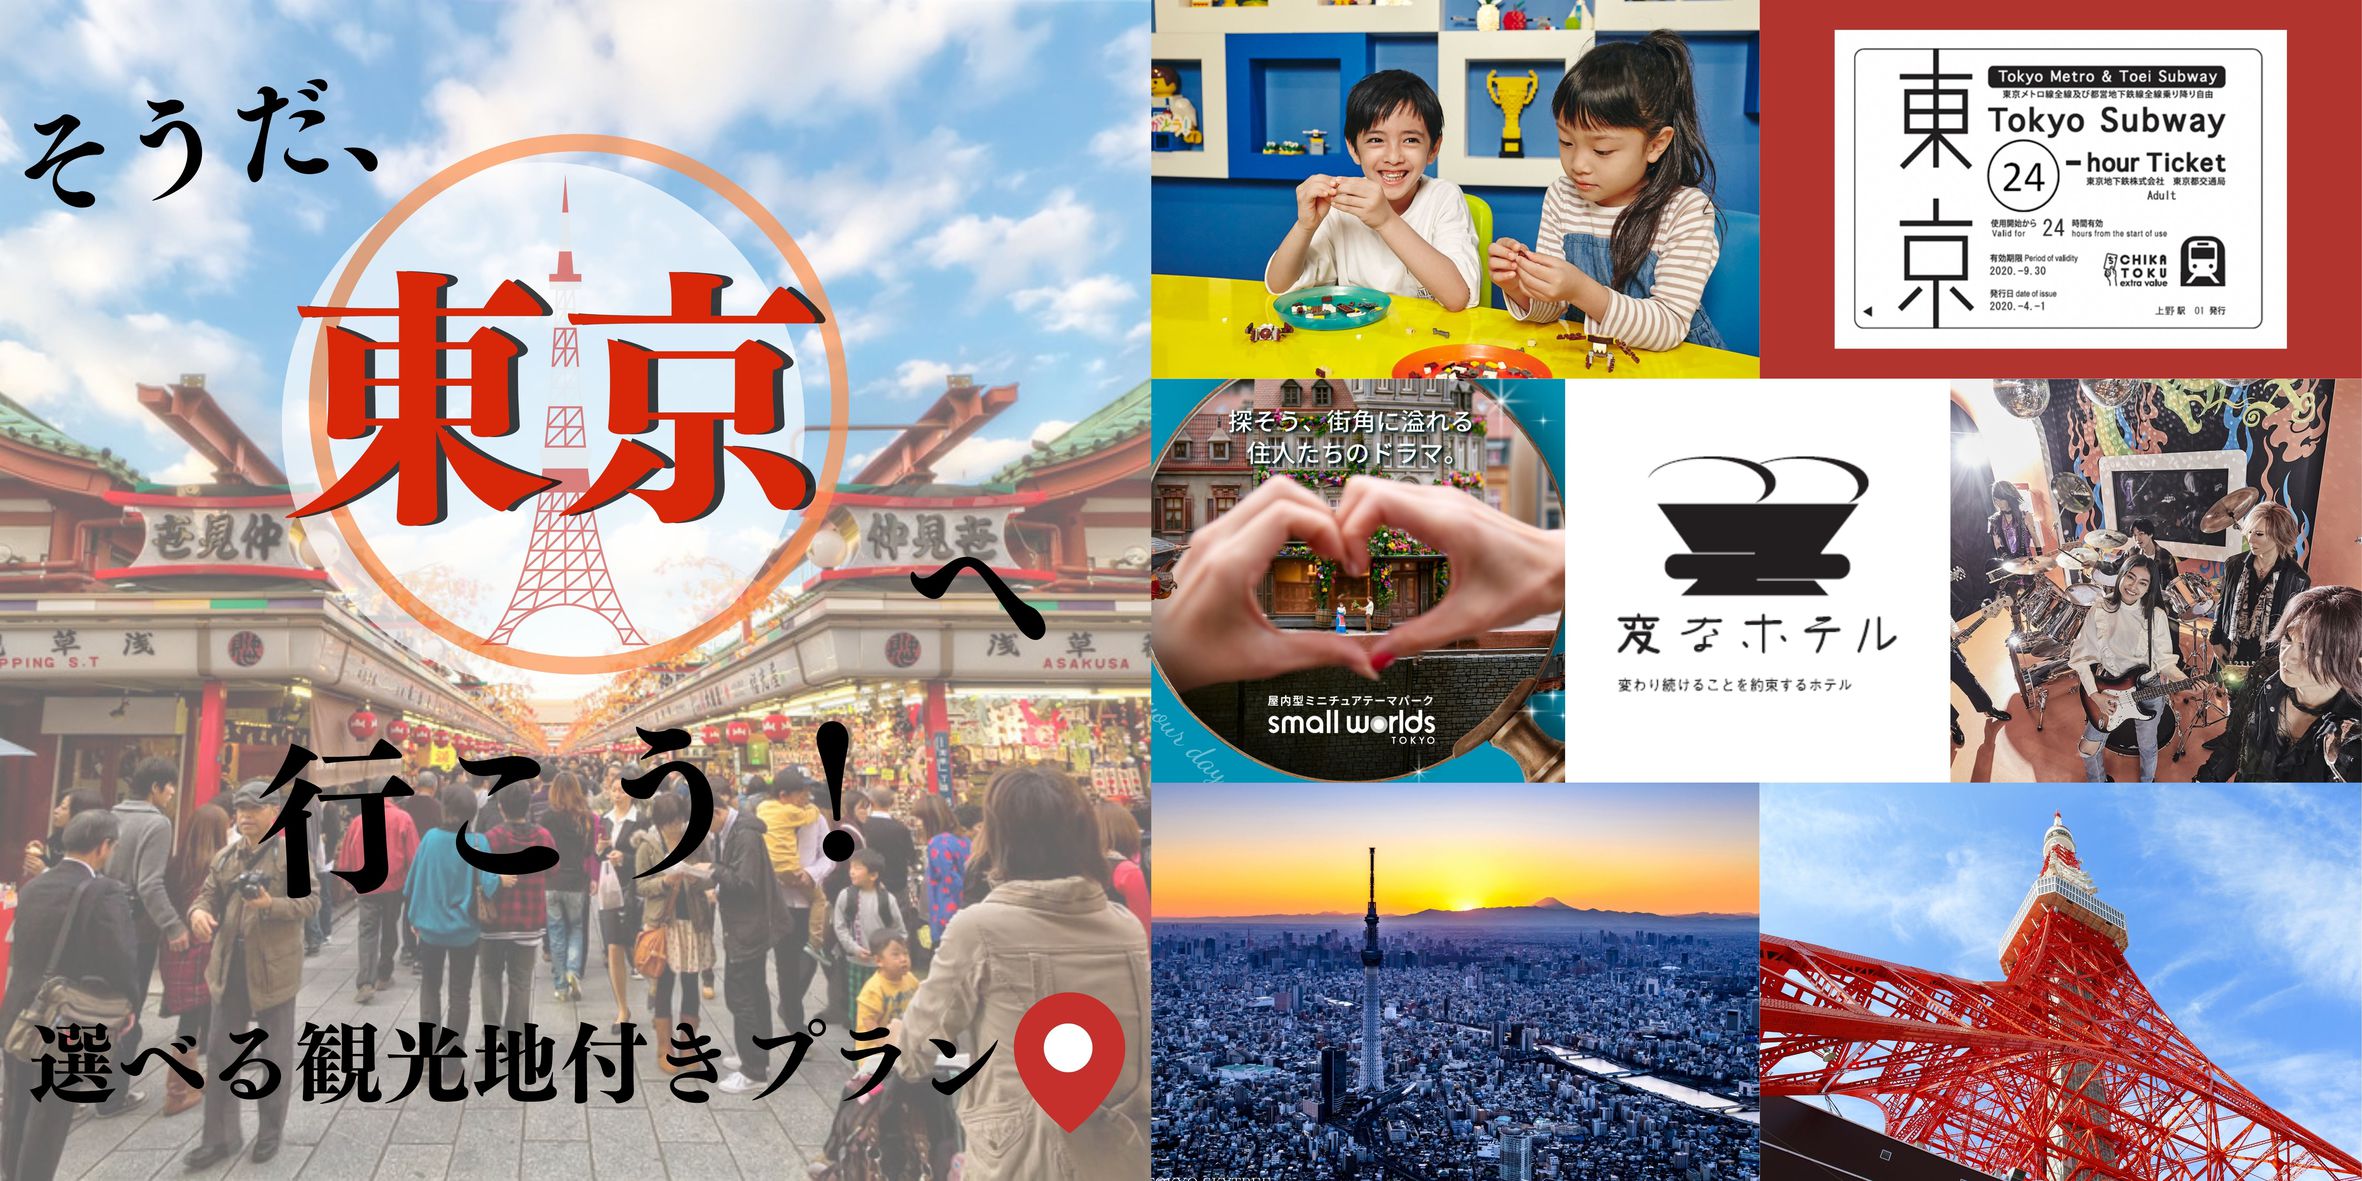 Enjoy Tokyo！観光に嬉しいメトロチケット+選べる5大観光付きプラン